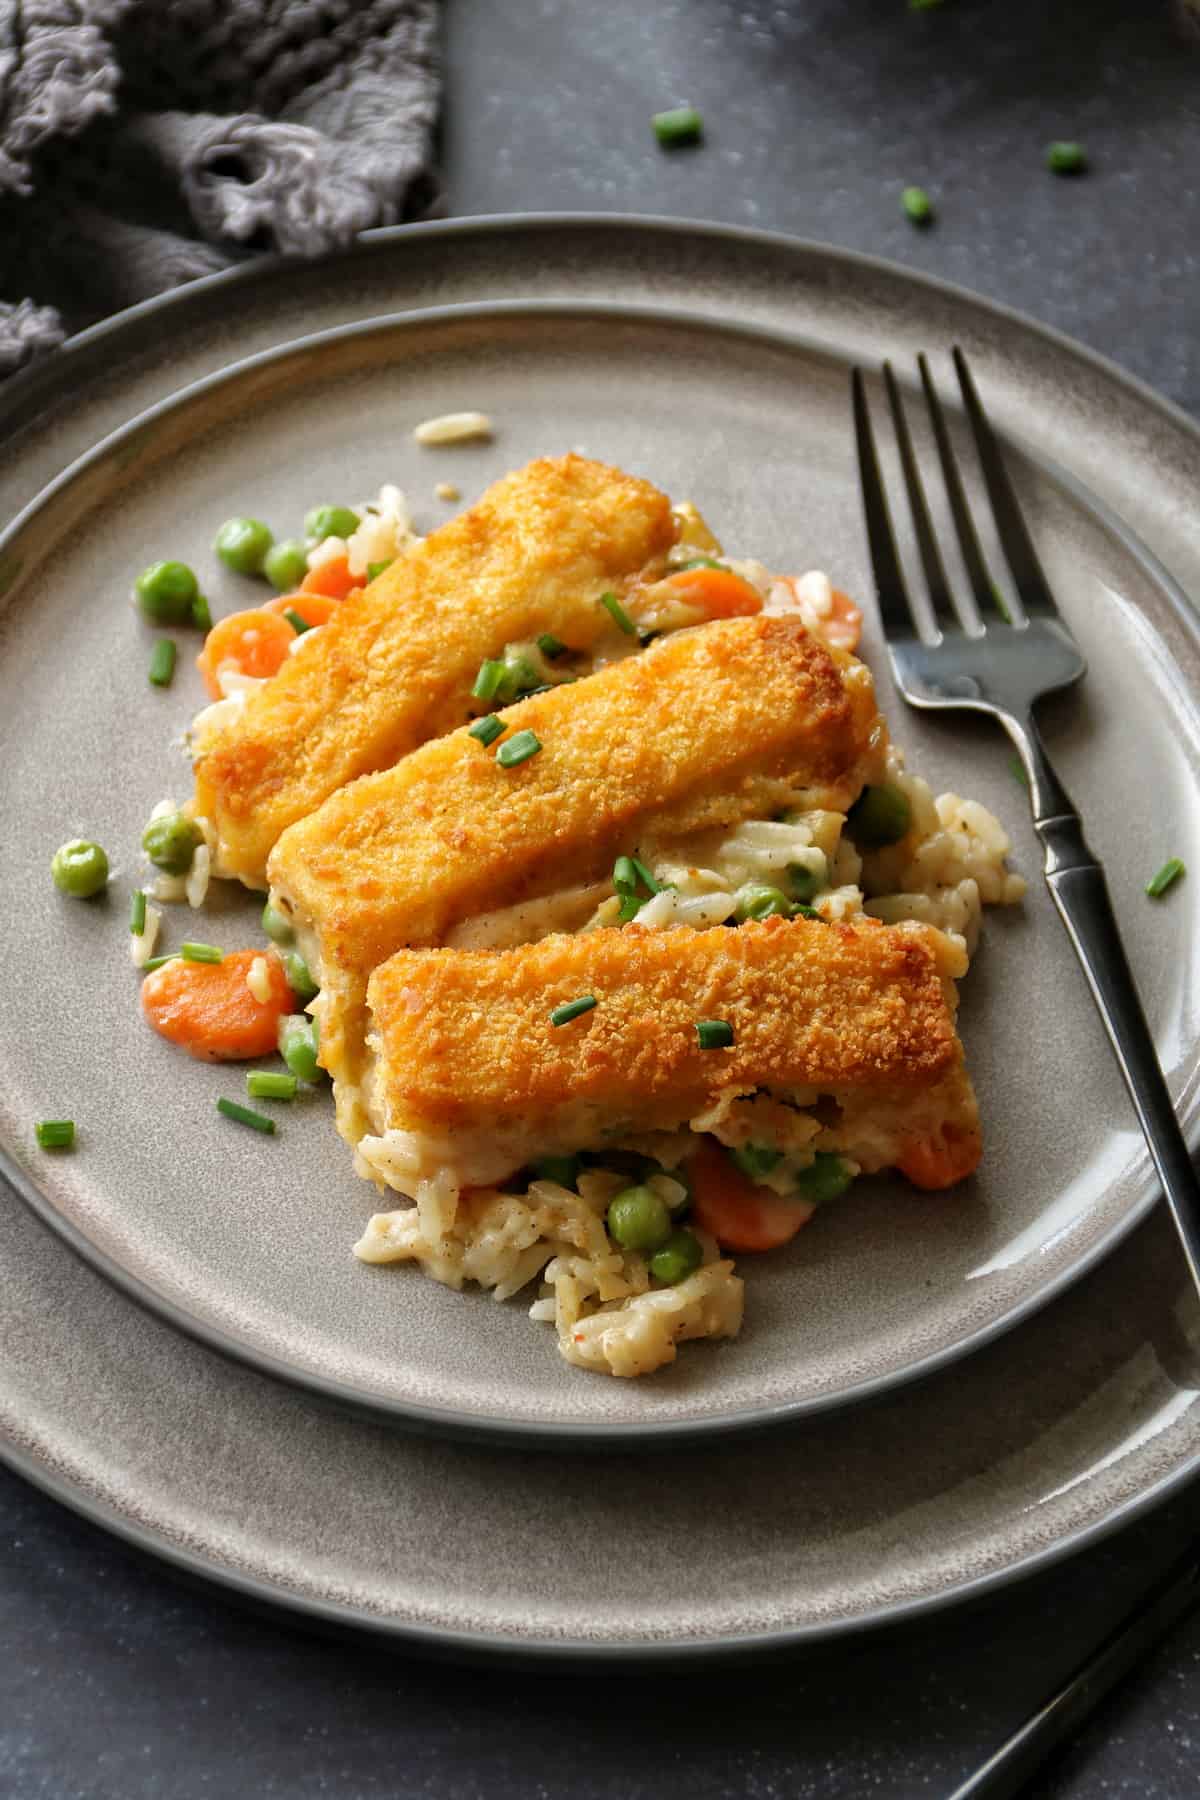 Tellerbild vom Fischstäbchen-Auflauf. Reis und Gemüse liegen mit 3 Fischstäbchen auf einem grauen Teller. Daneben liegt eine schwarze Gabel.